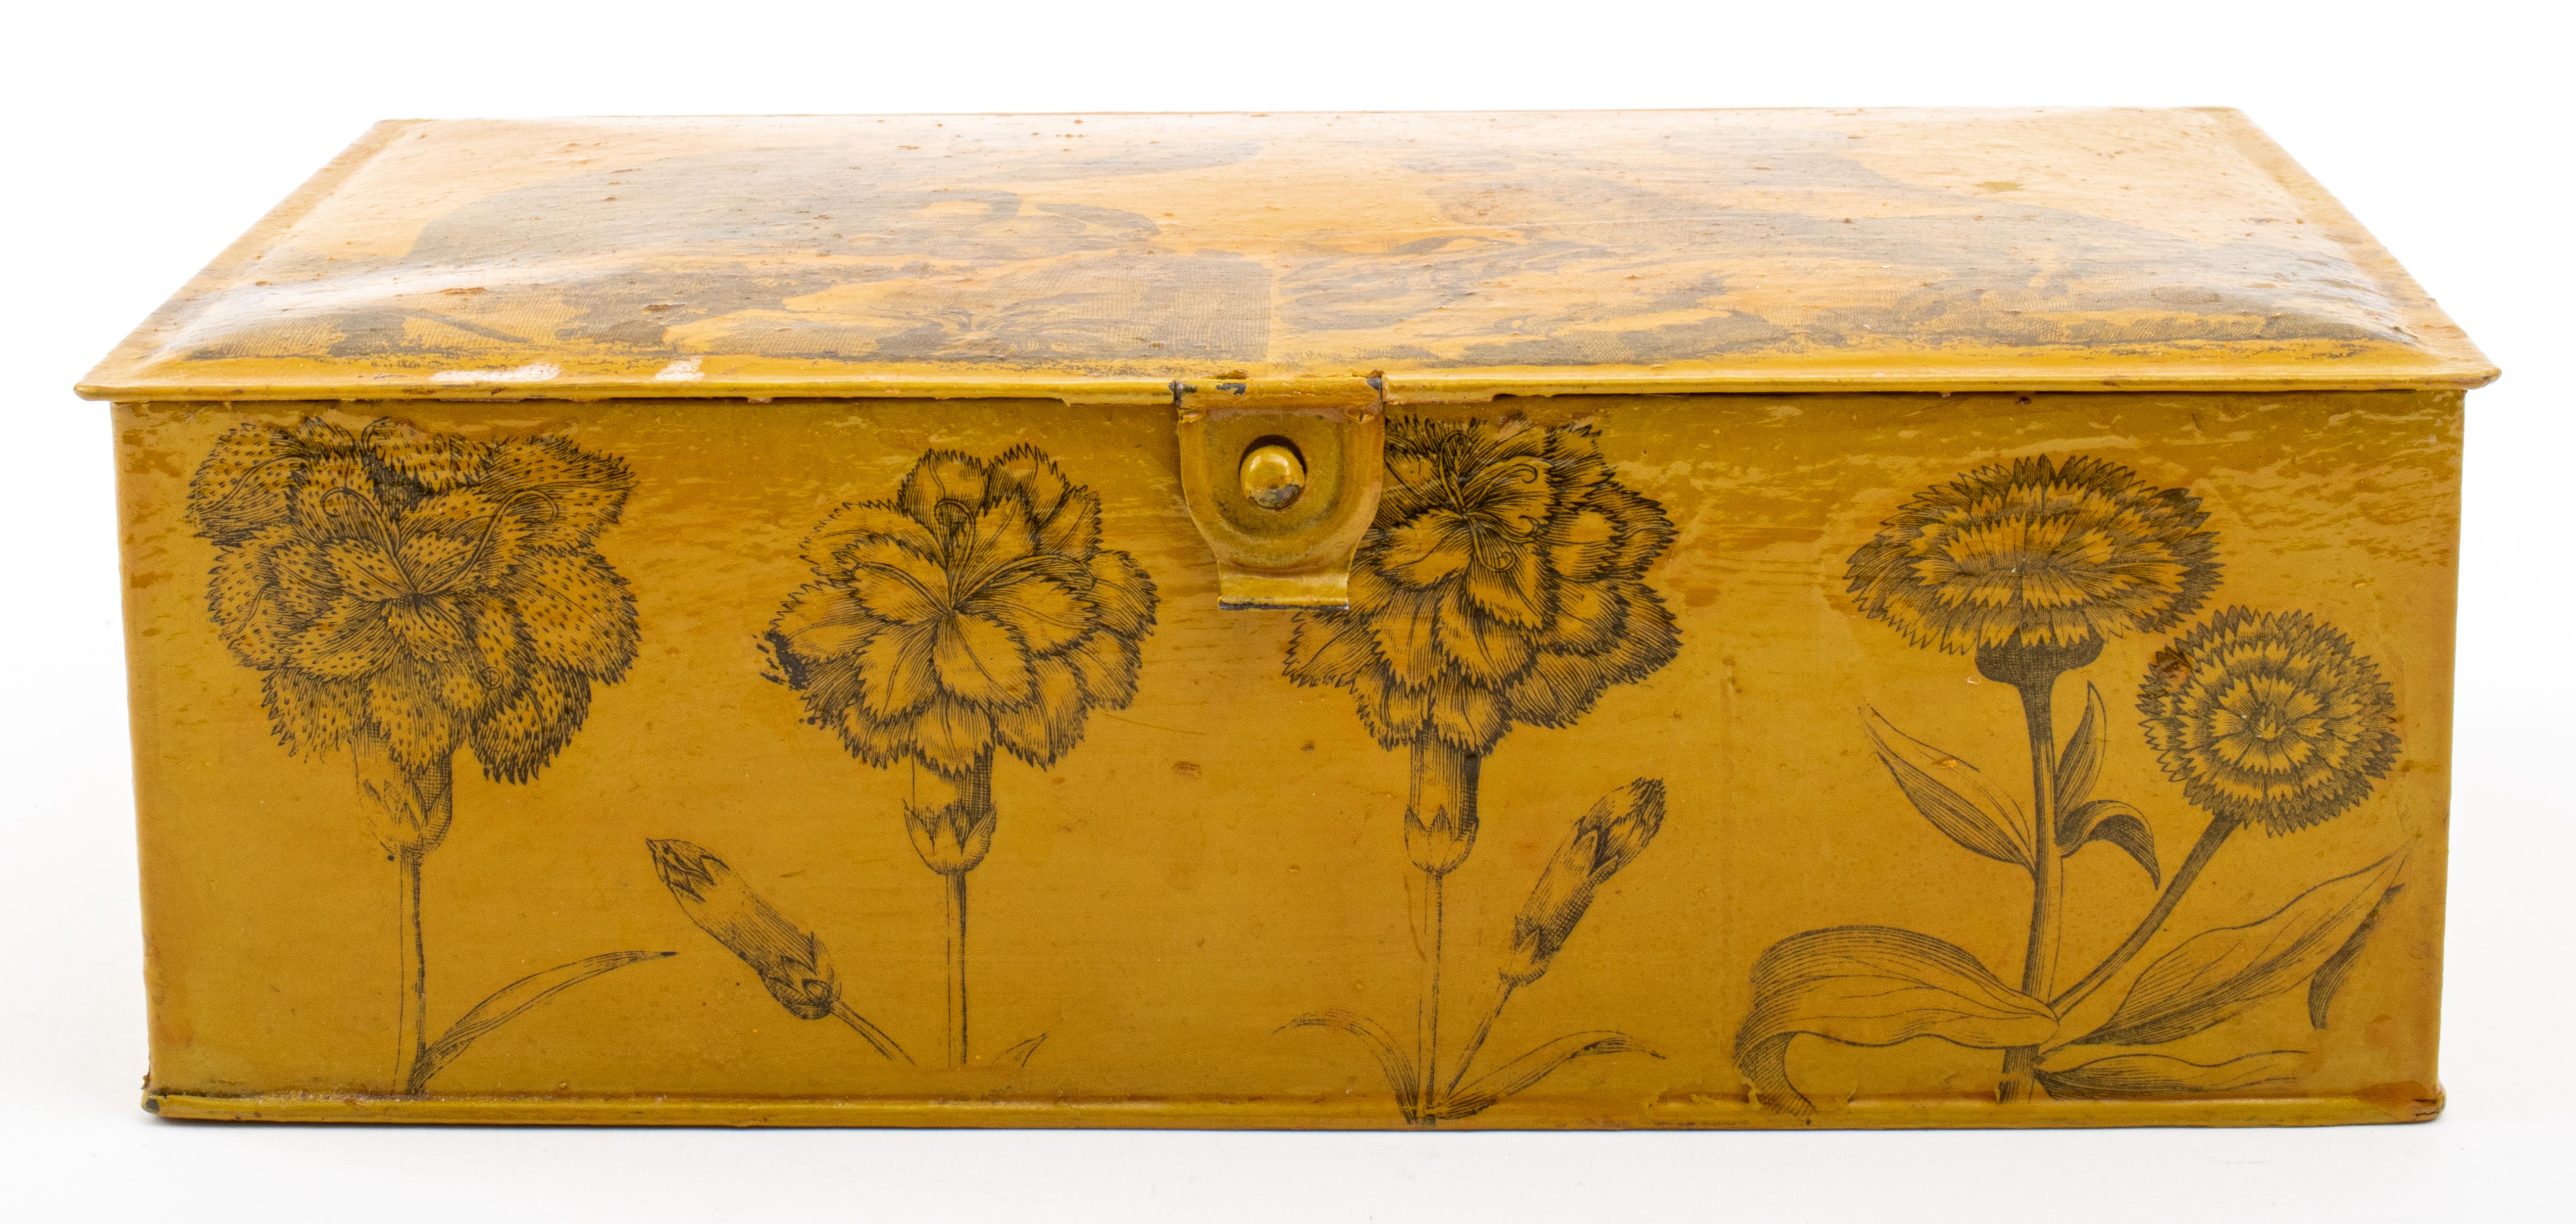 Cercueil rectangulaire décoré par découpage, le dessus avec des images de singes, les côtés avec des roses et des œillets, appliqués sur un fond peint à la moutarde, le couvercle intérieur décoré d'une scène d'hiver datée de 1858, le reste de